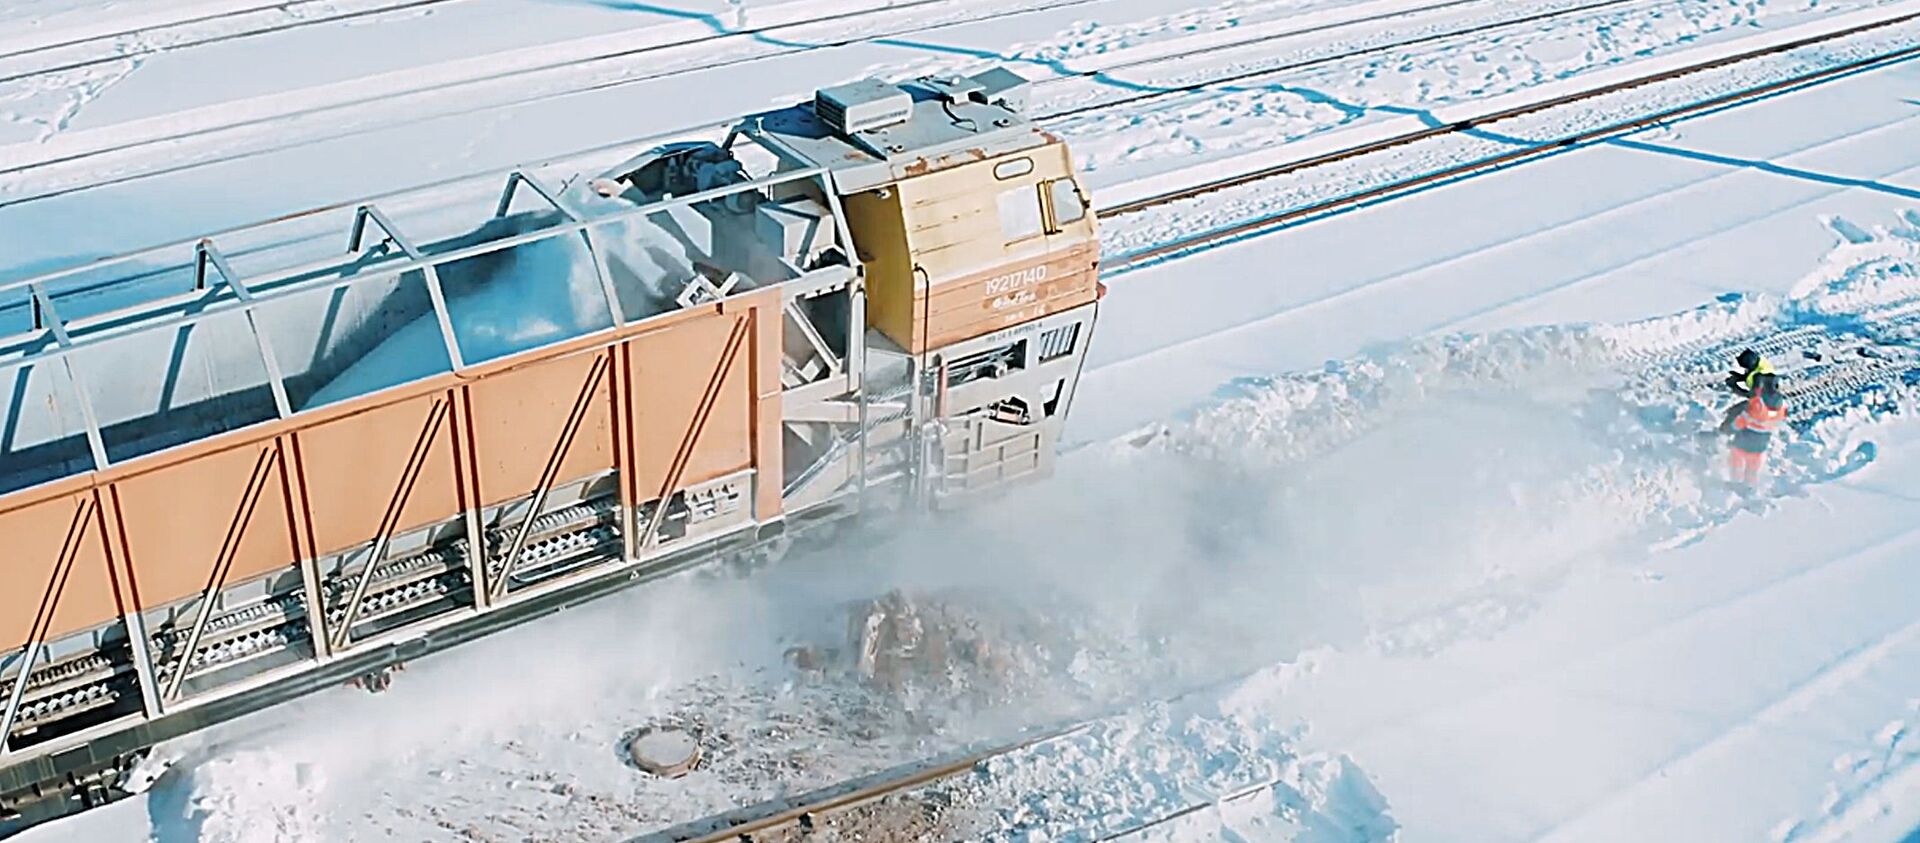 Литовские железные дороги показали на видео уборку снега - Sputnik Литва, 1920, 26.02.2021